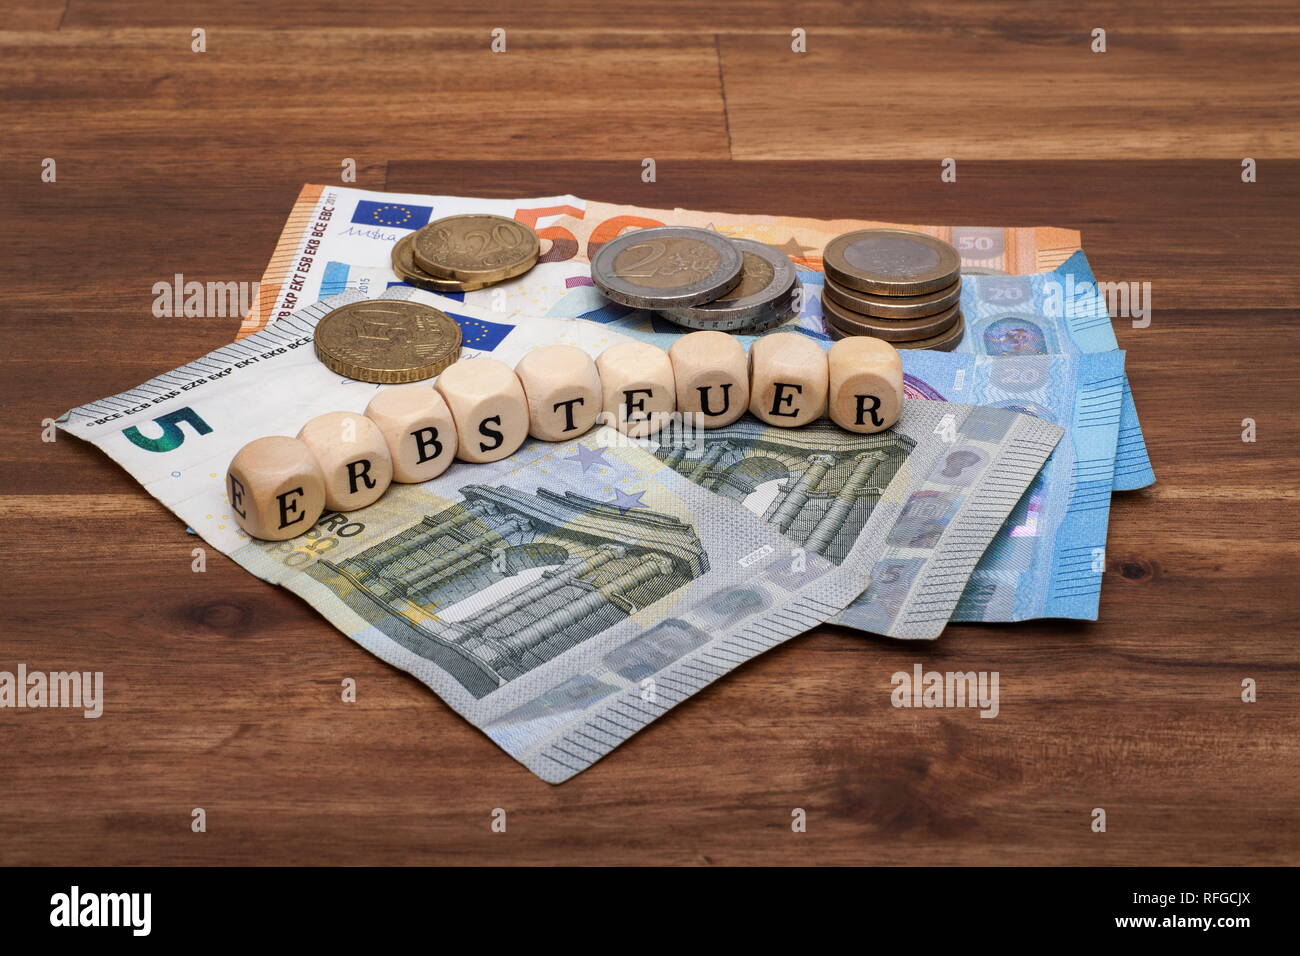 Die Euro Geldscheine und Münzen liegen auf dem Tisch mit dem Wort Erbsteuer Foto Stock